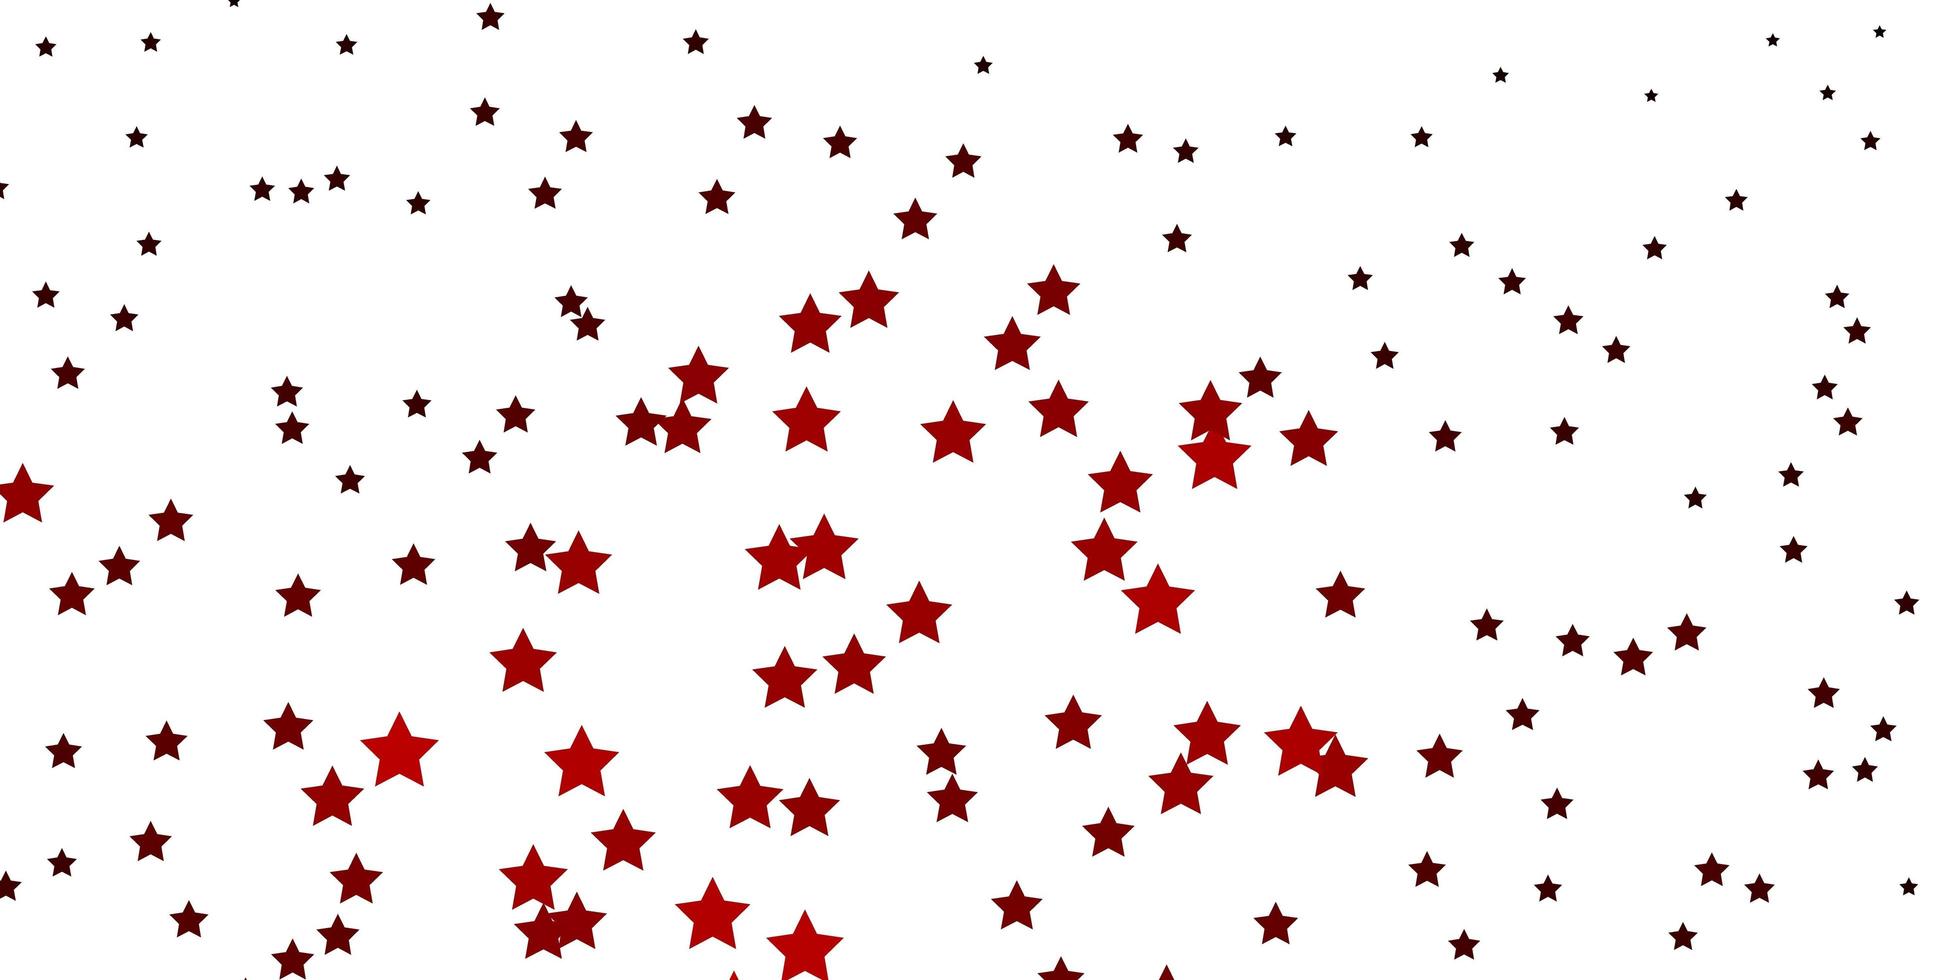 fond de vecteur marron foncé avec des étoiles colorées illustration décorative avec des étoiles sur un modèle abstrait meilleur design pour votre bannière d'affiche publicitaire